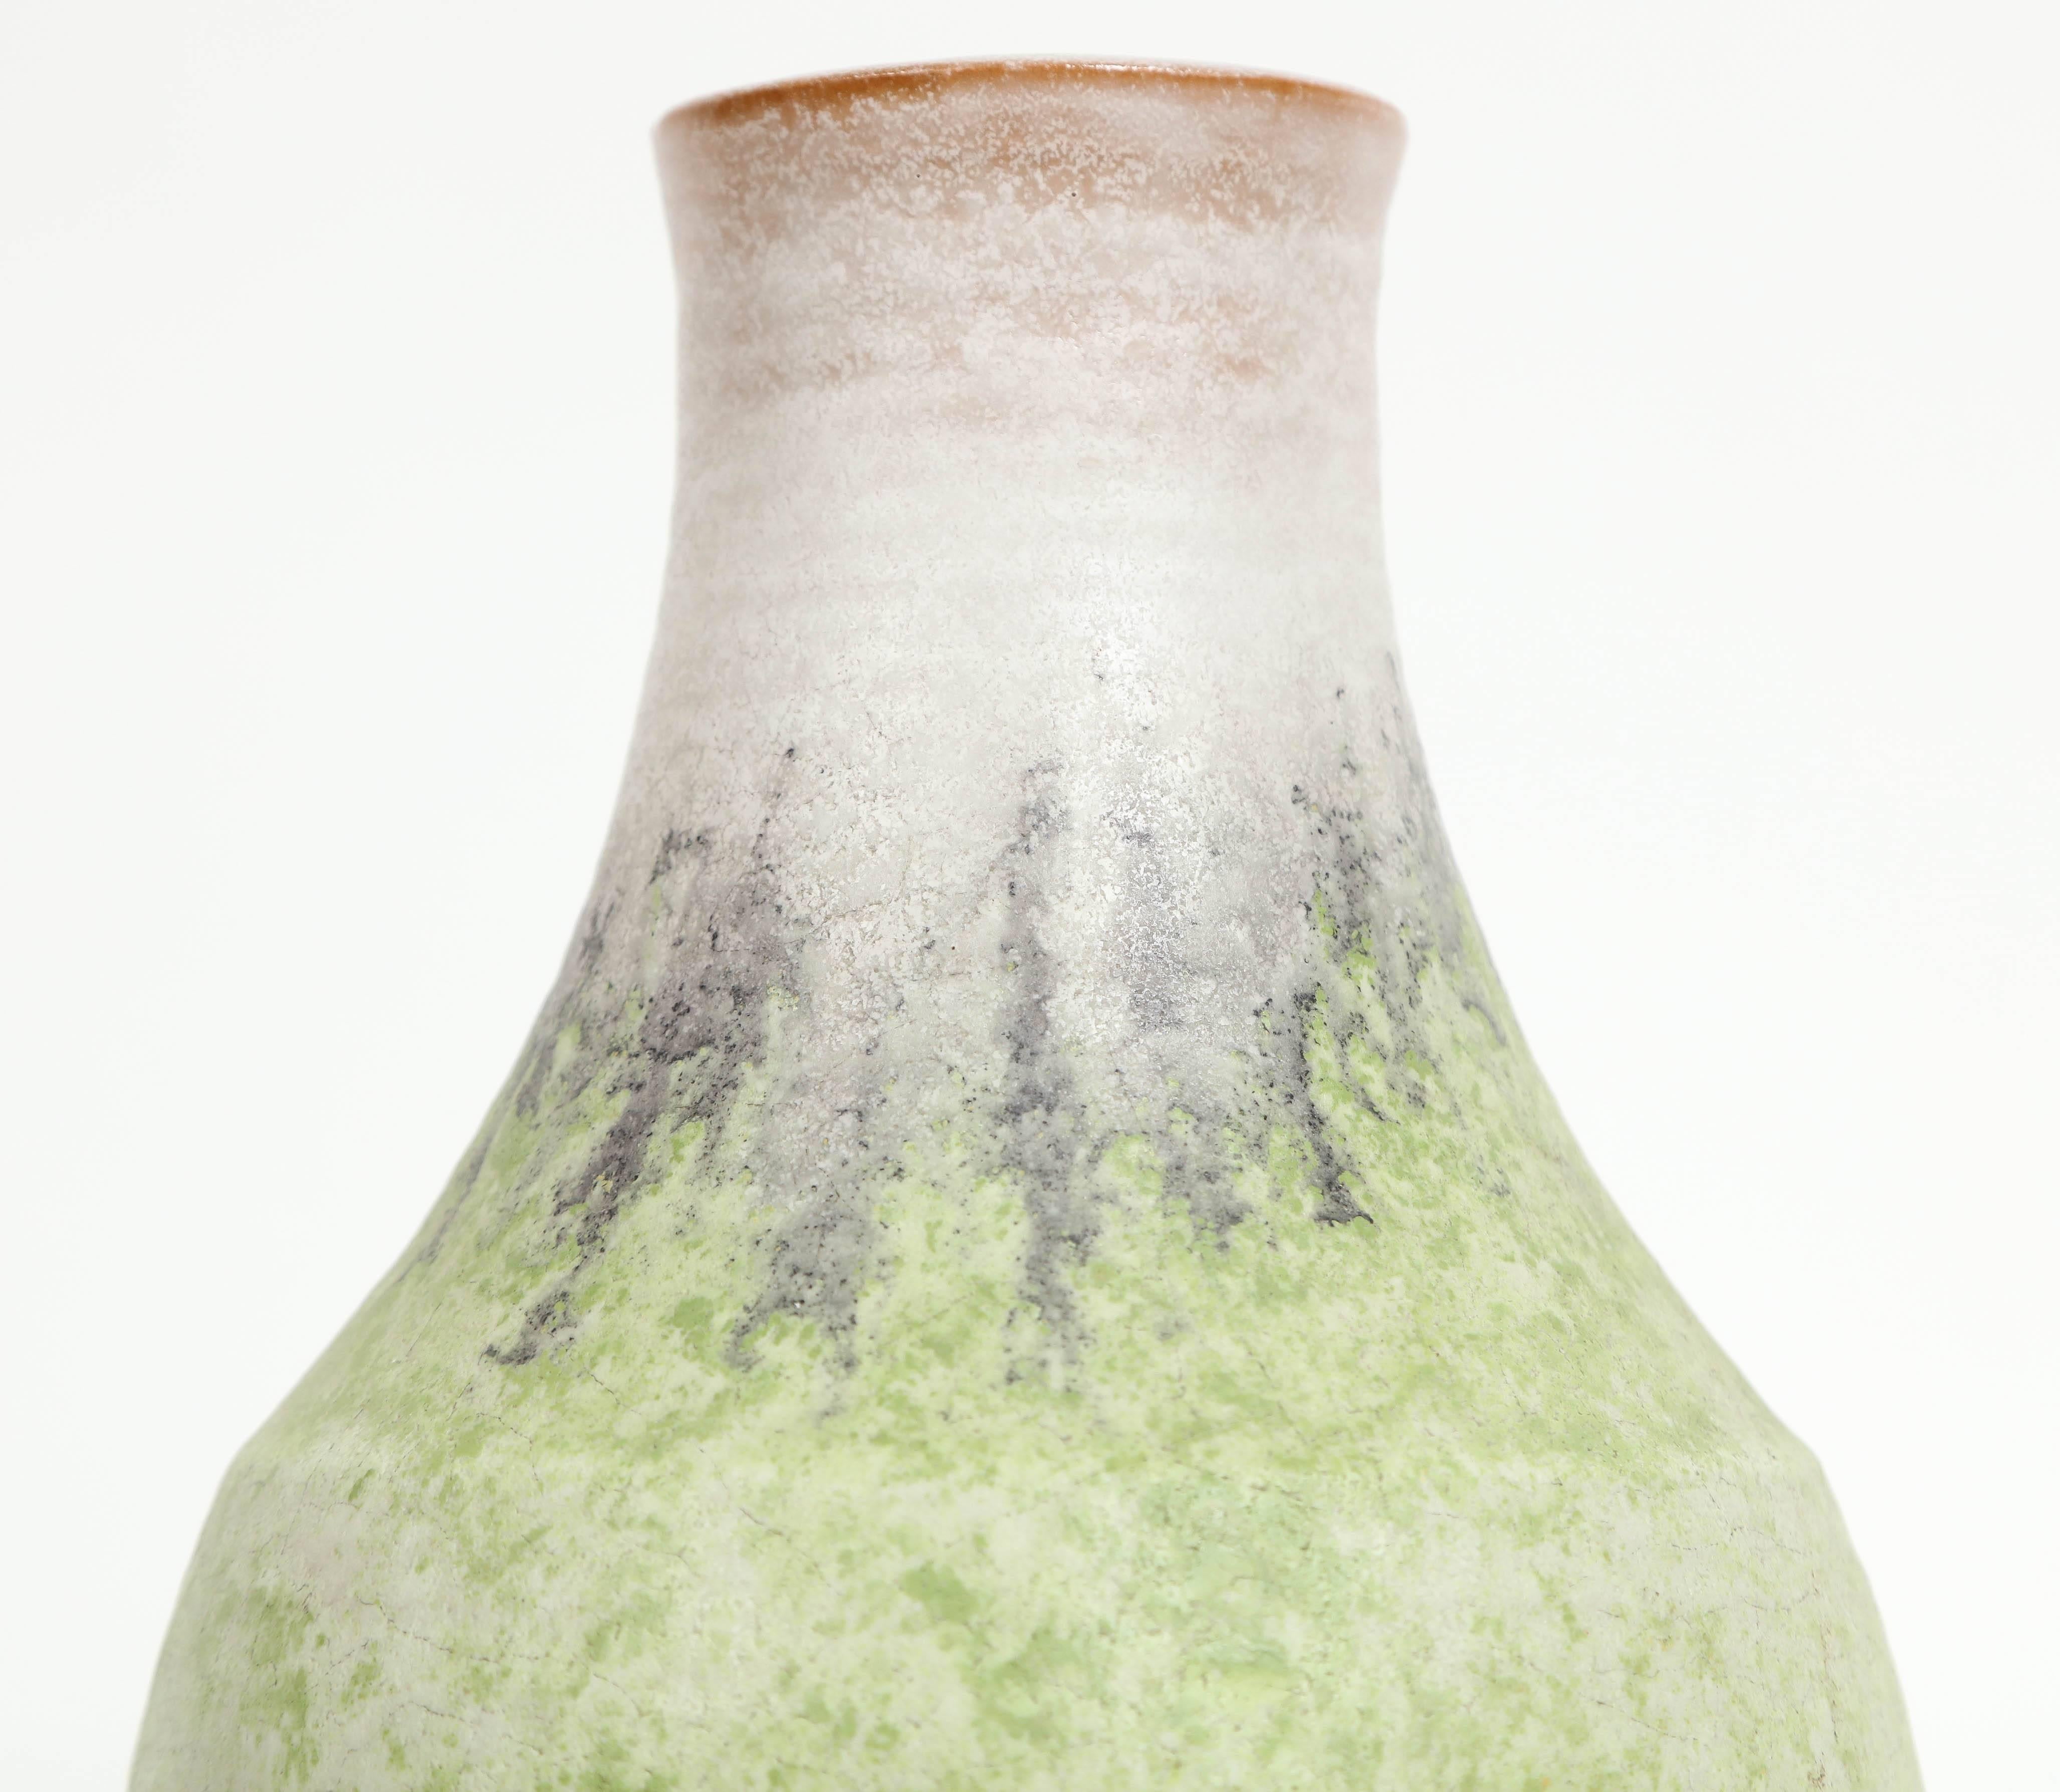 Italian Marcello Fantoni Ceramic Vase, Glazed Stoneware, circa 1970s For Sale